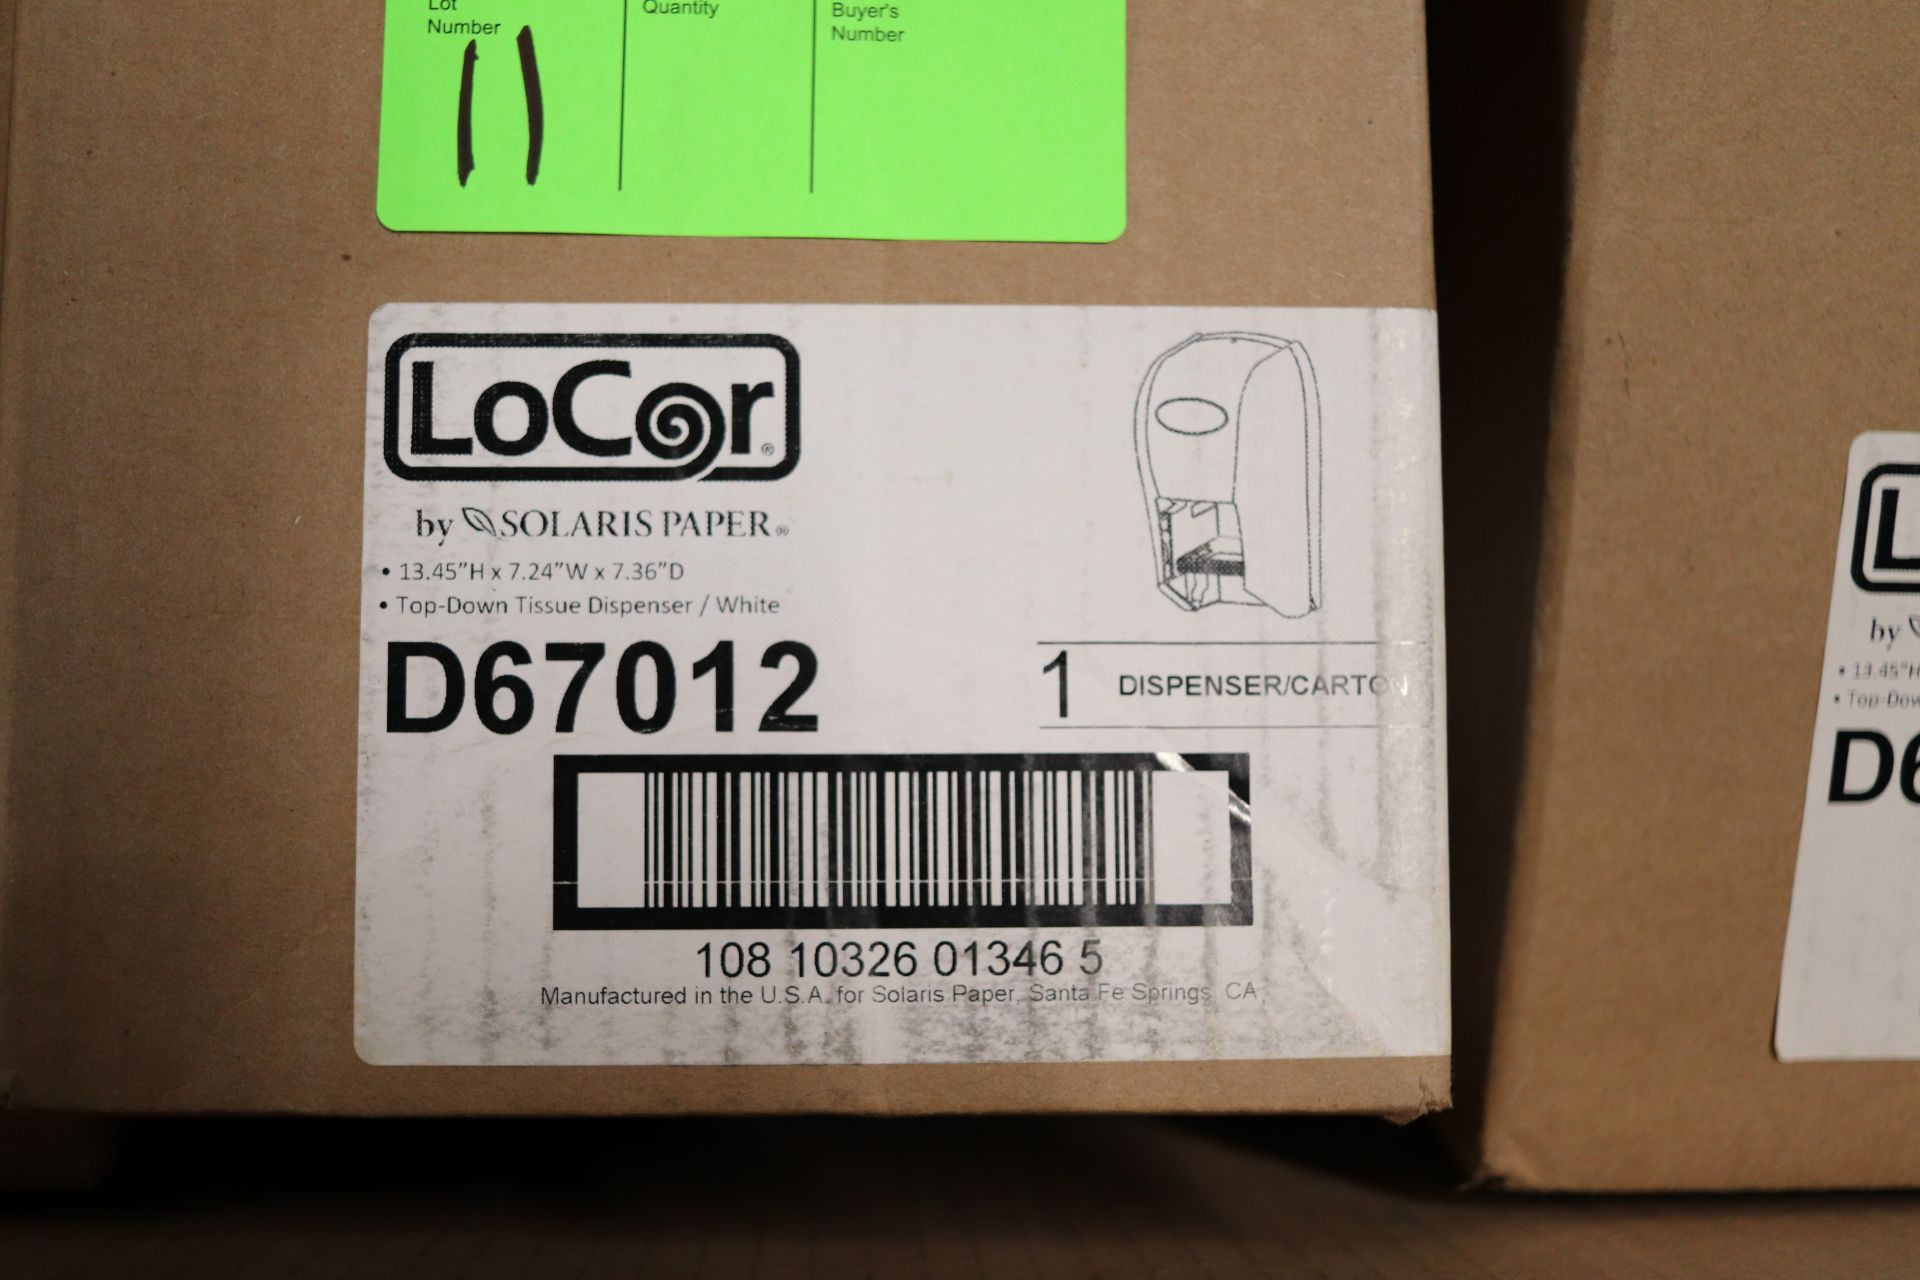 Three Locor Solaris paper dispensers, model D67012 - Image 2 of 2